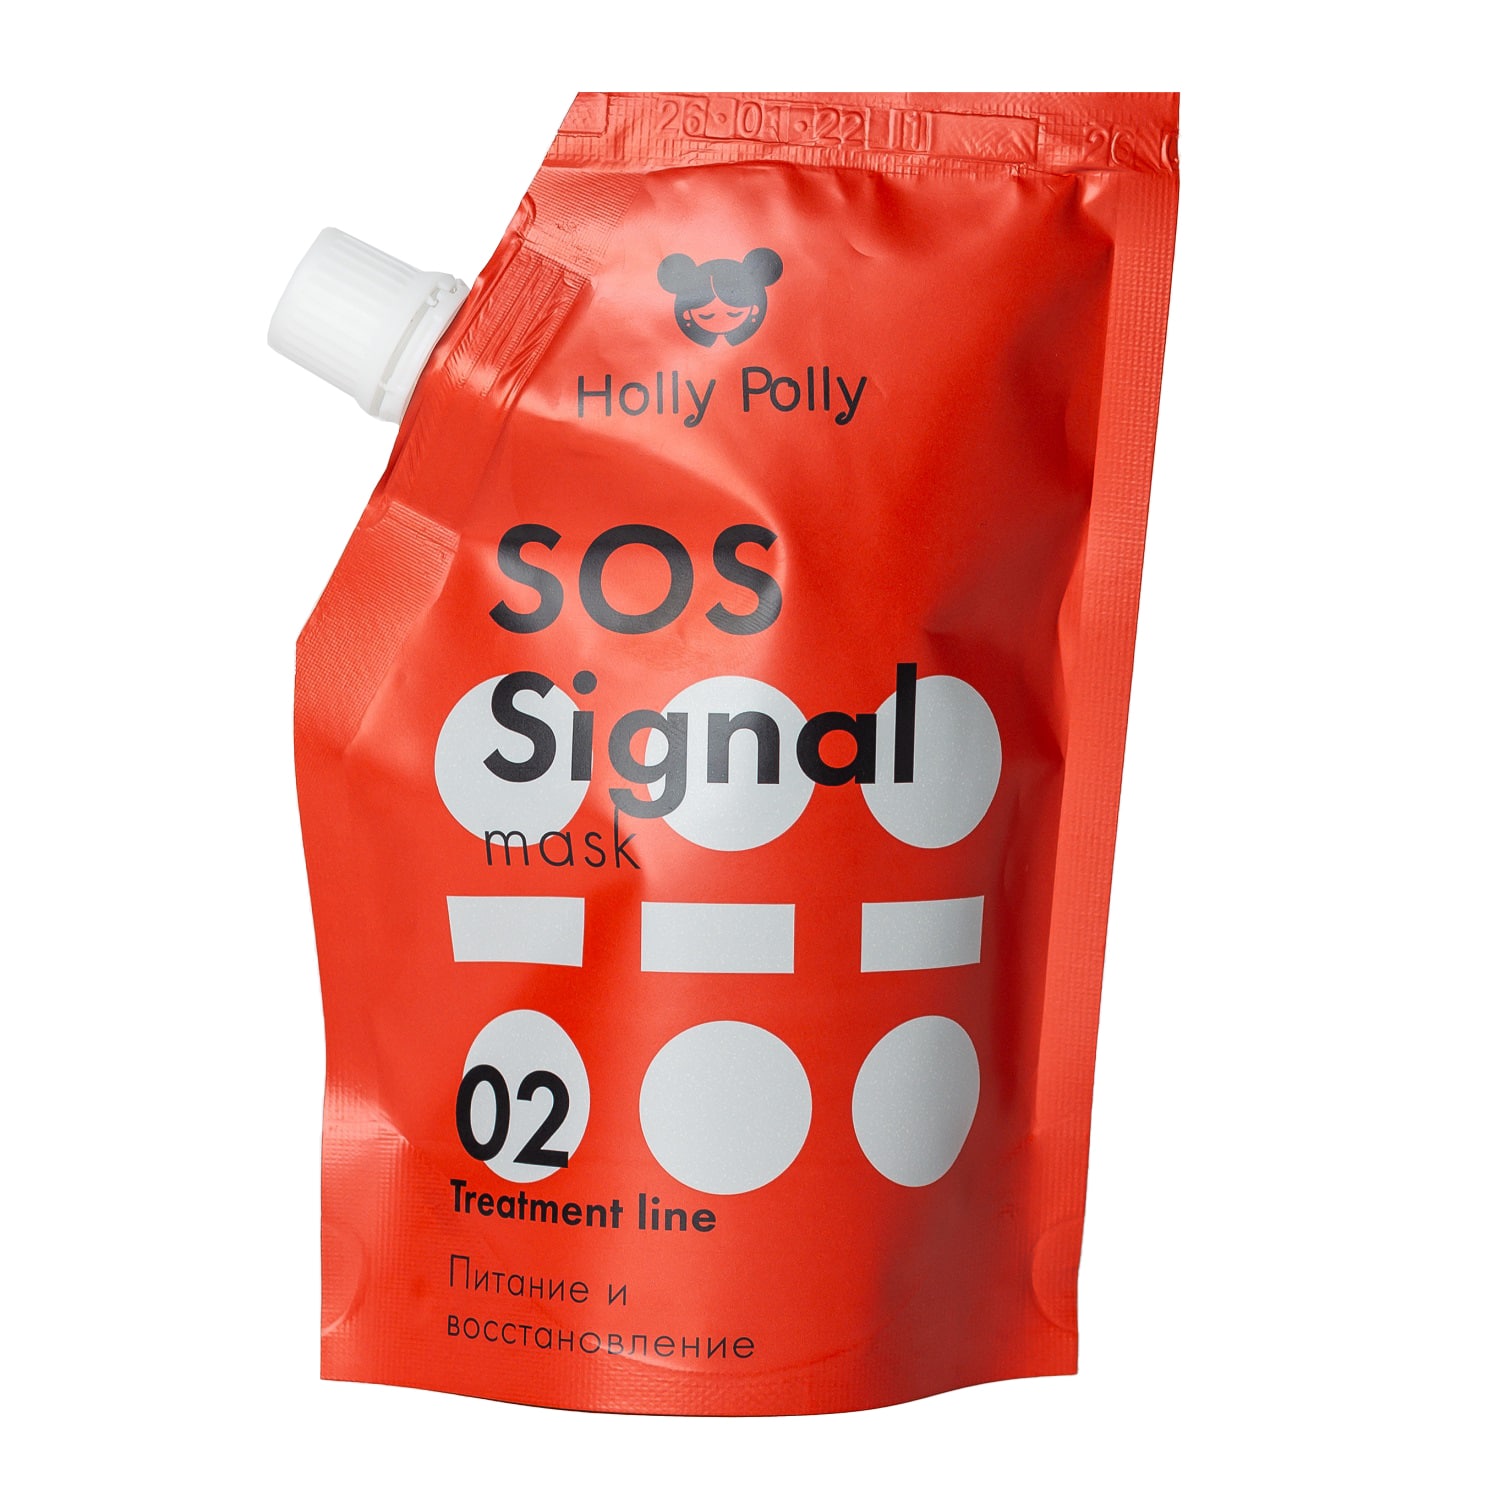 Holly Polly Экстра-питательная маска для волос SOS Signal, 1